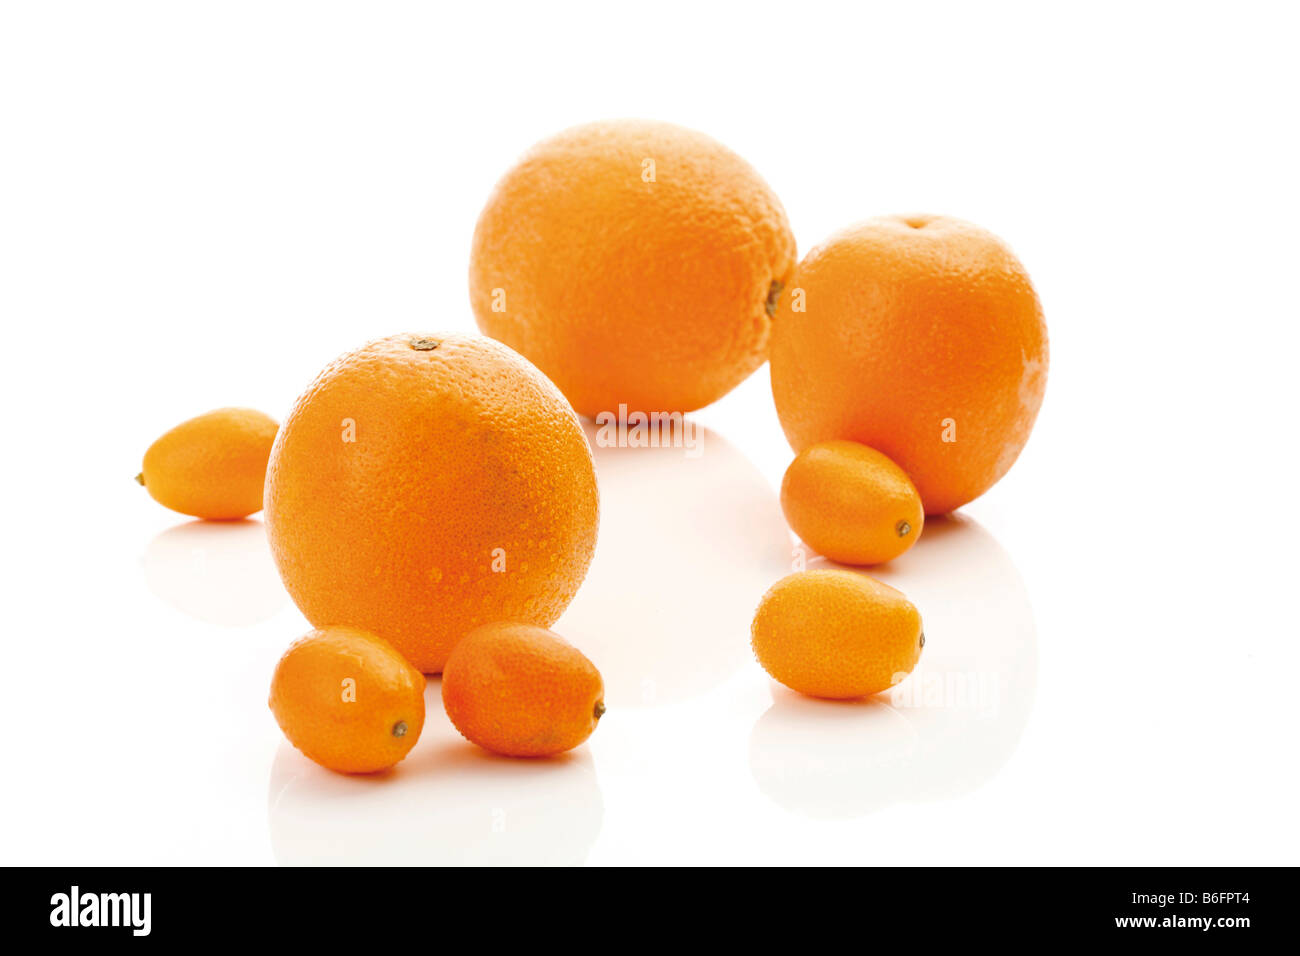 Oranges and cumquats, citrus fruits Stock Photo